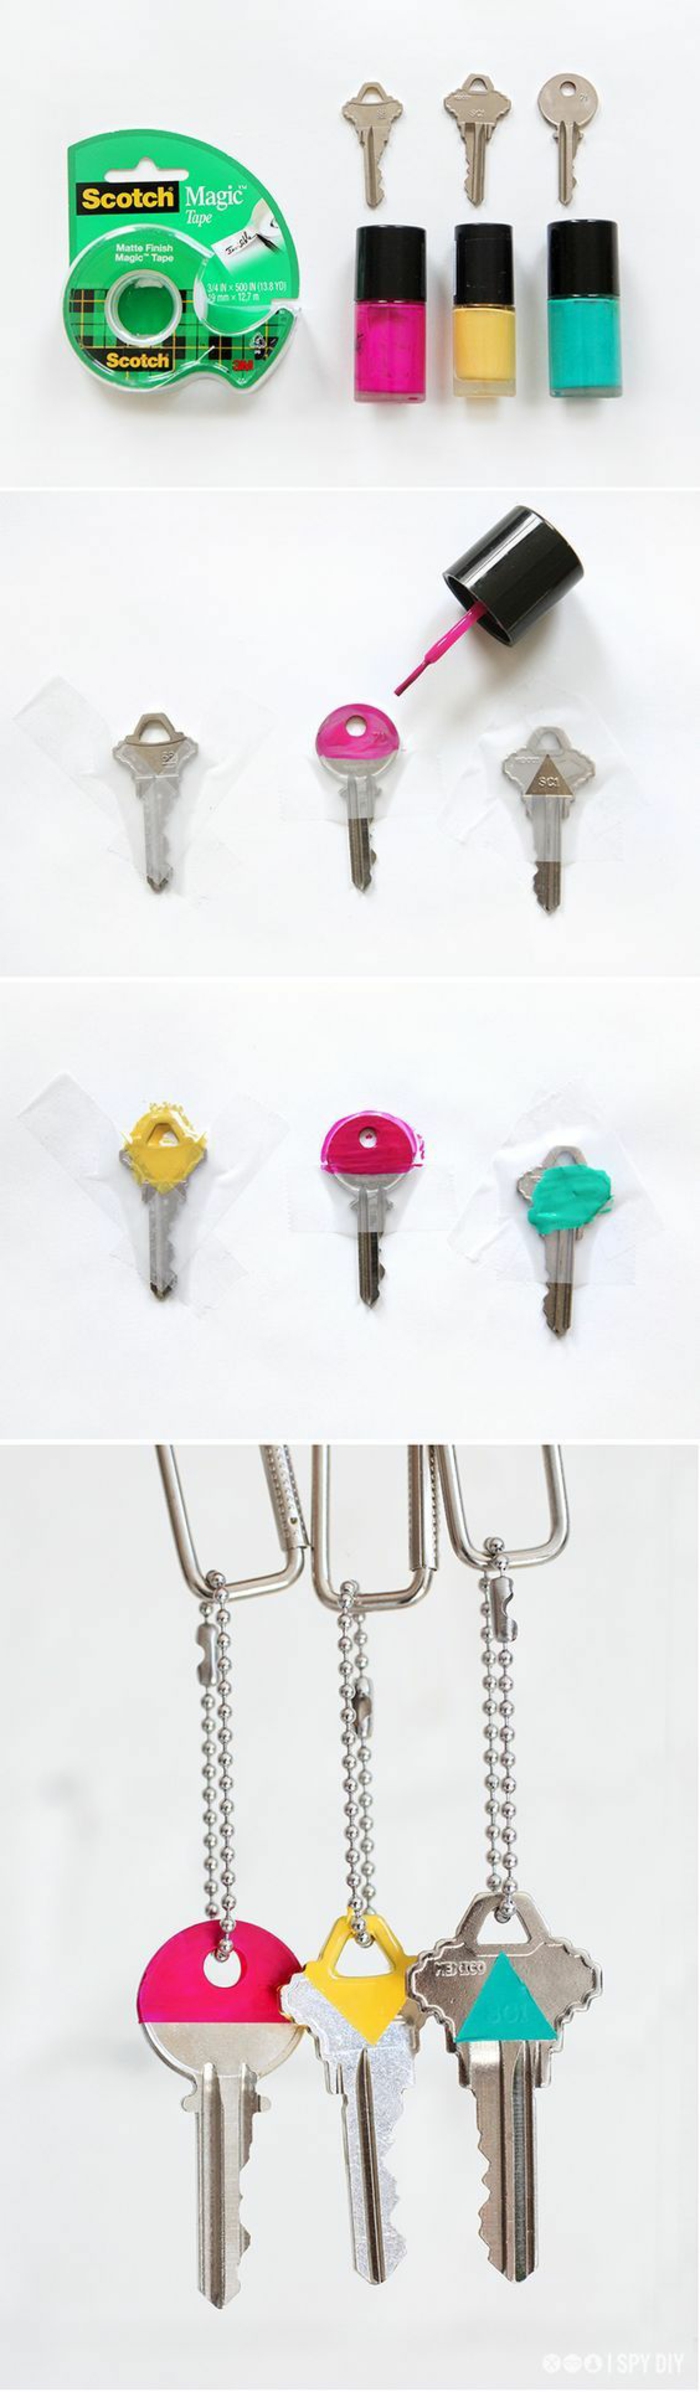 bastelideen mit schlüsseln, deko farben, lack nagellack zum dekorieren von den schlüsseln, kreativ und easy zum finden, wenn sie sehr viele schlüssel haben